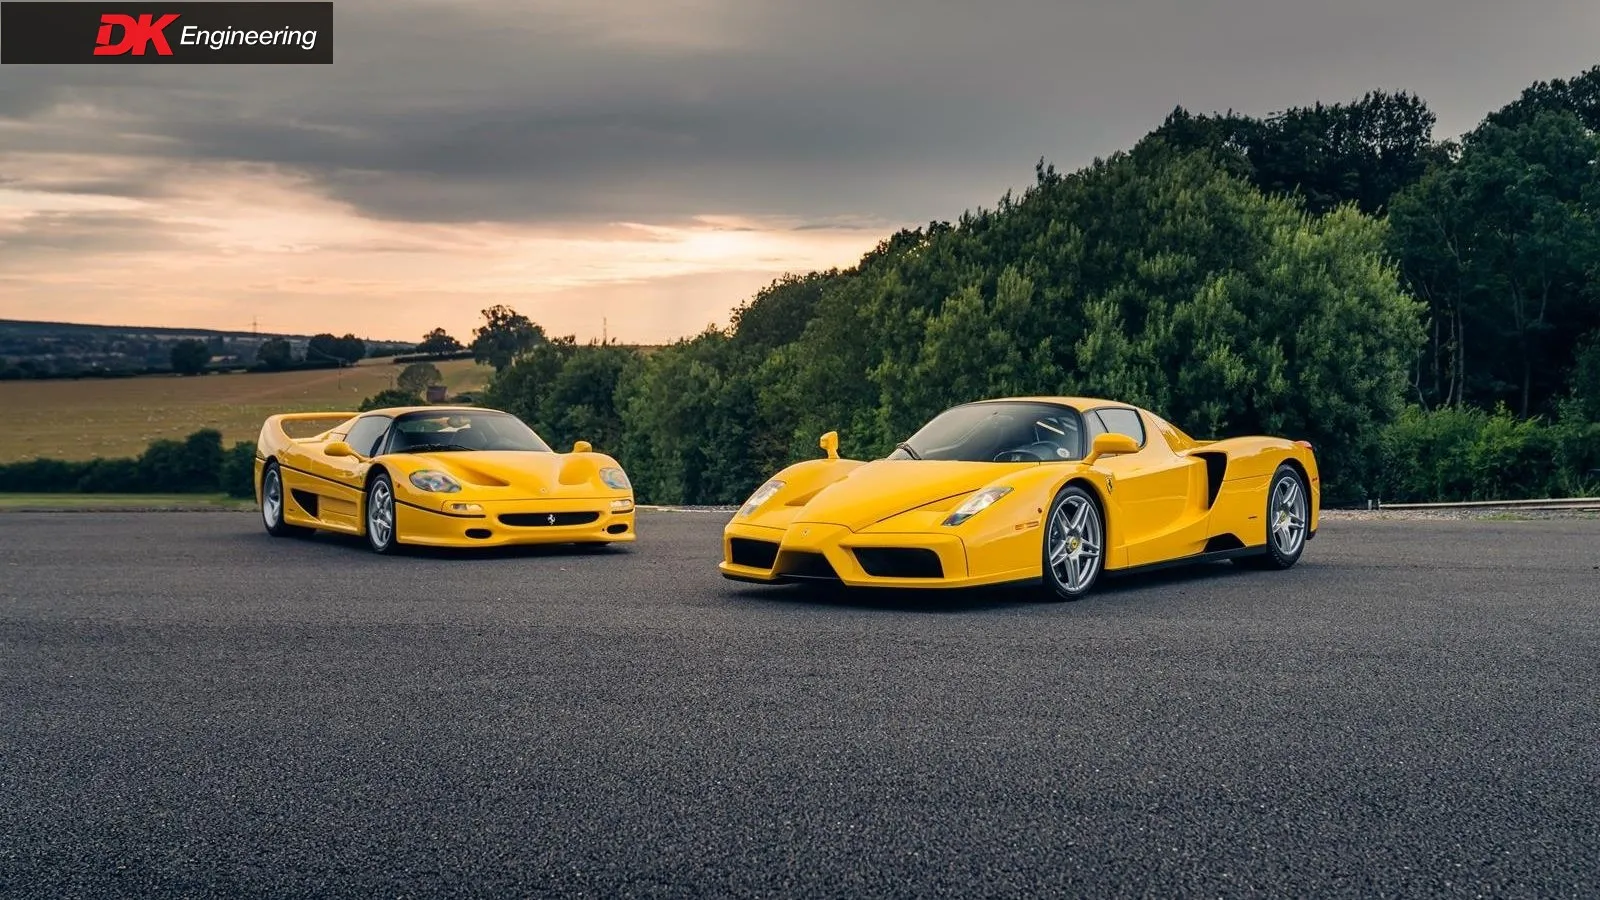 ¿Quieres tener dos coches muy especiales en tu garaje? Estos dos Ferrari amarillos pueden ser una gran opción